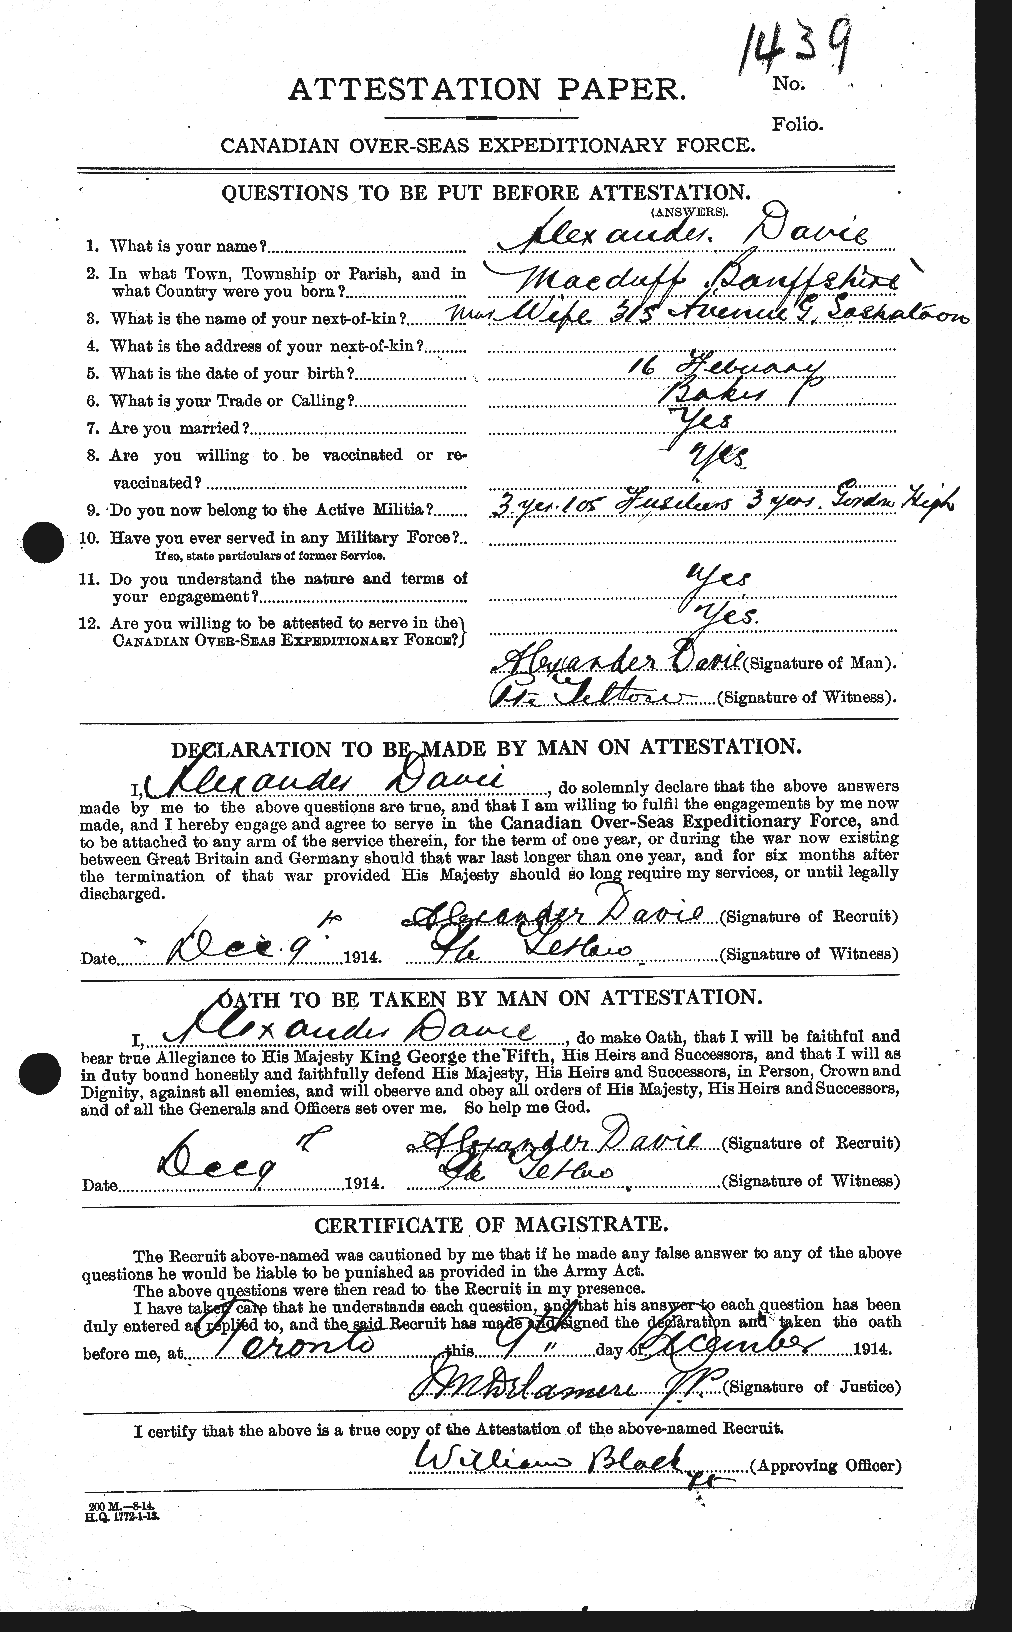 Dossiers du Personnel de la Première Guerre mondiale - CEC 278807a